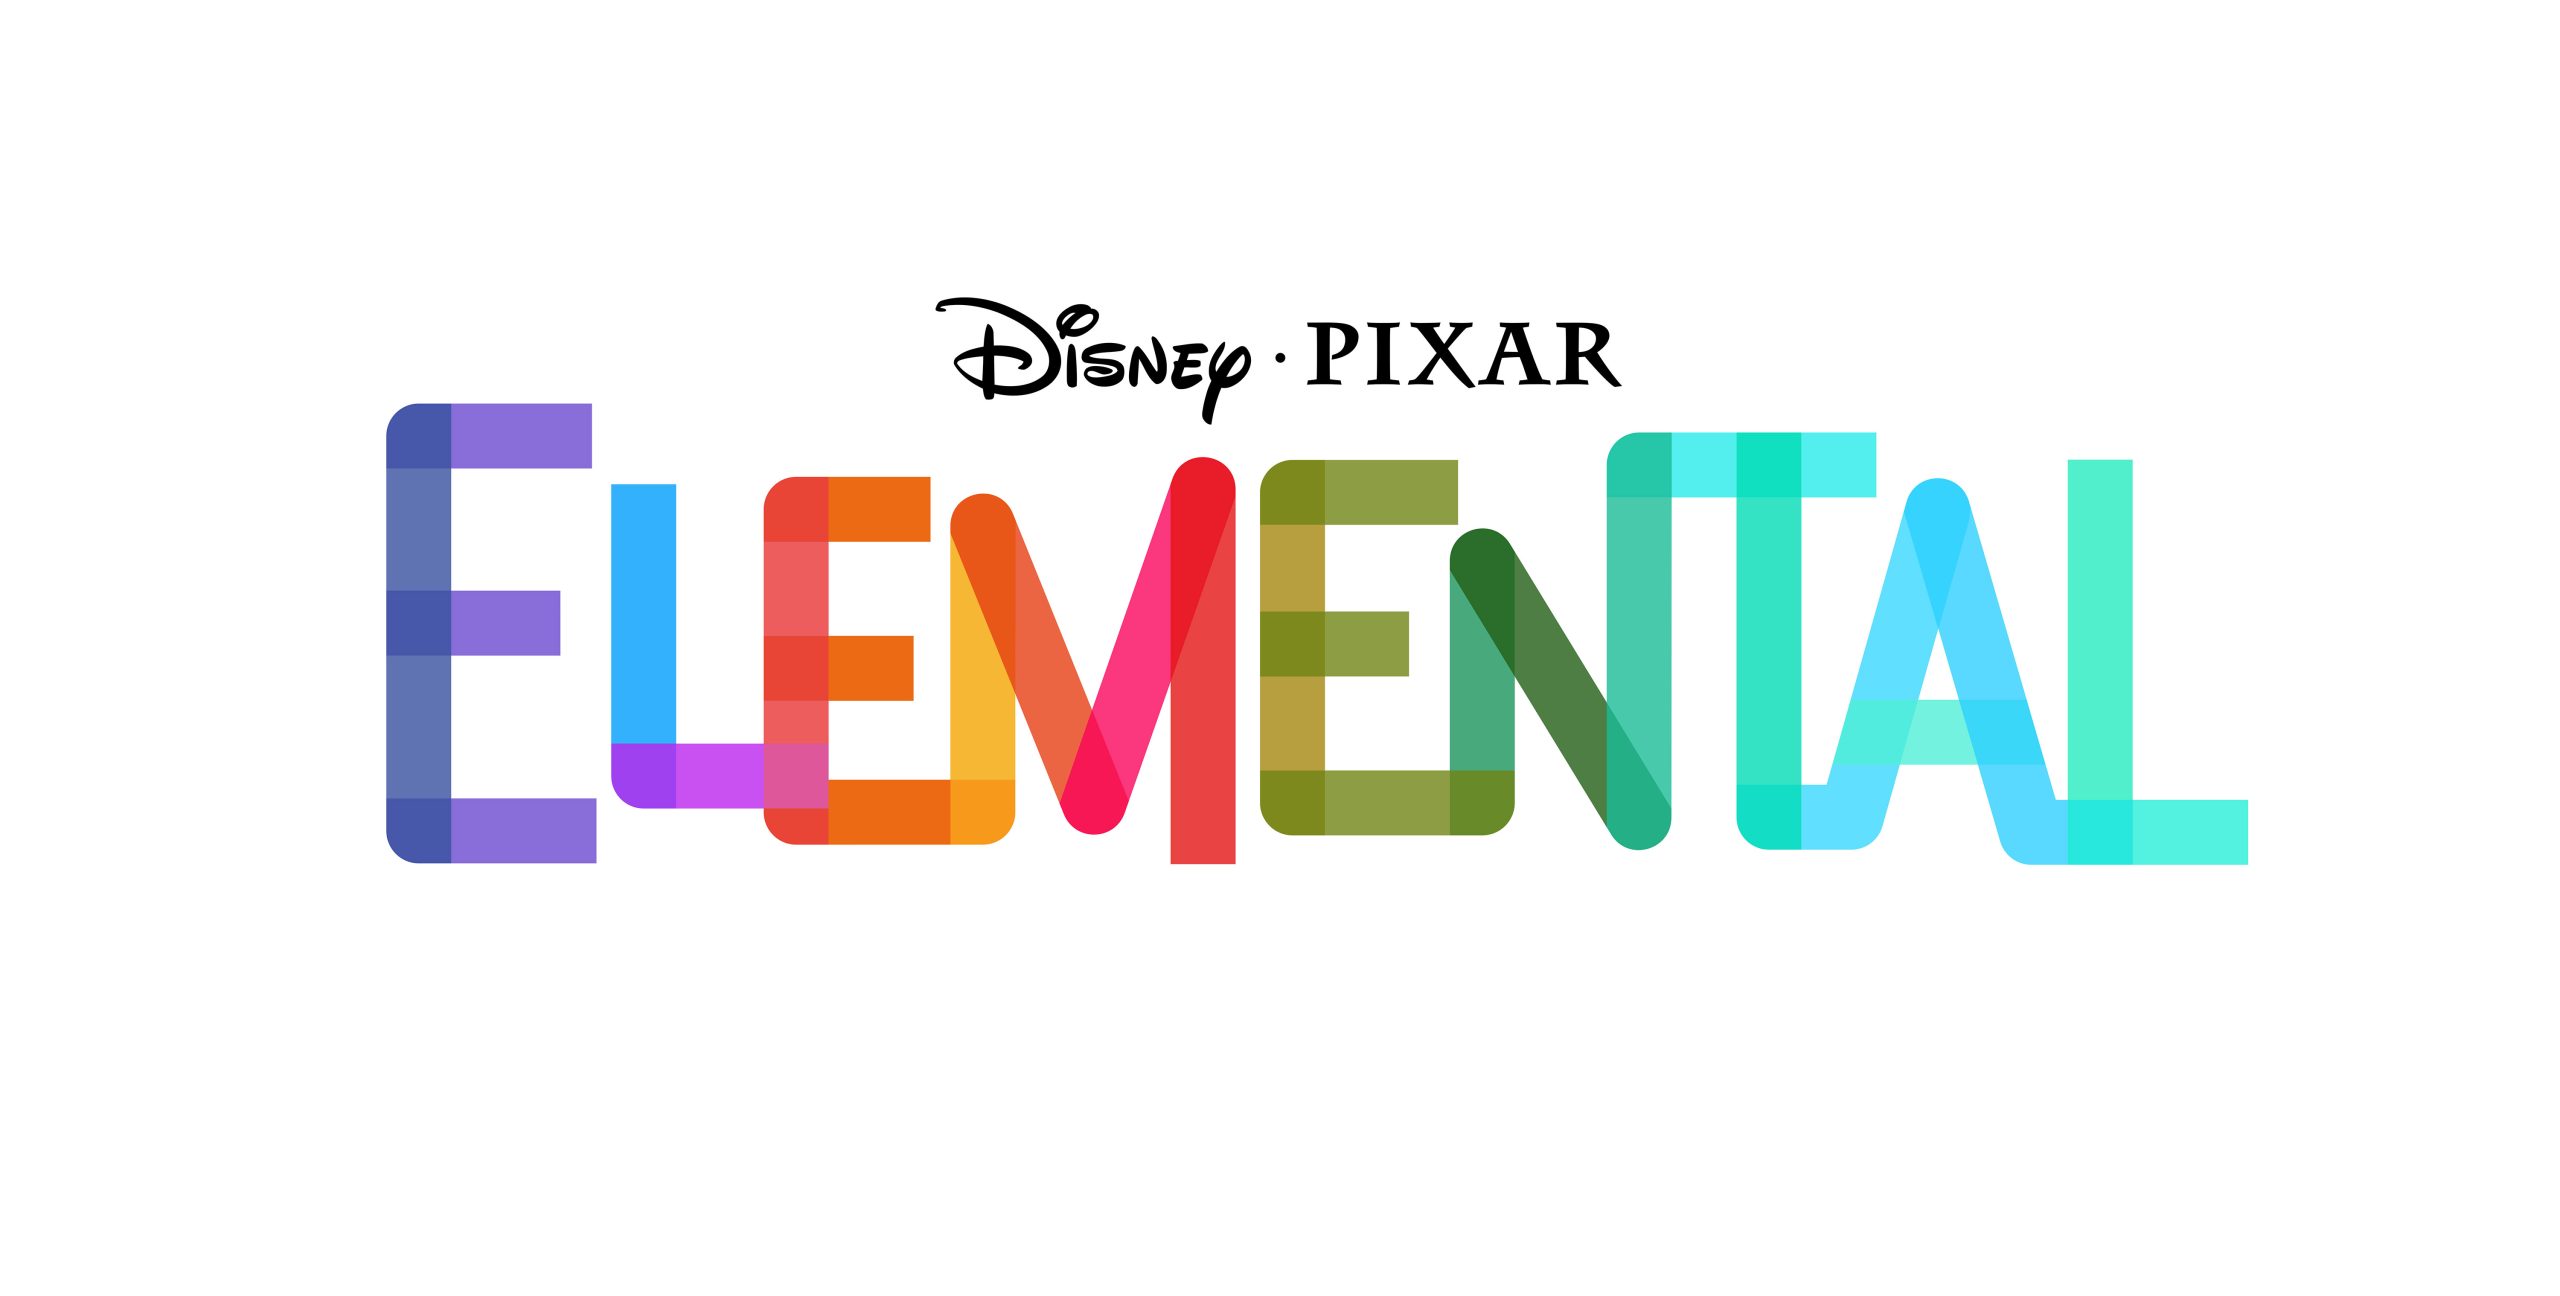 Séries Brasil on X: A Pixar divulgou sua nova animação “Elemental